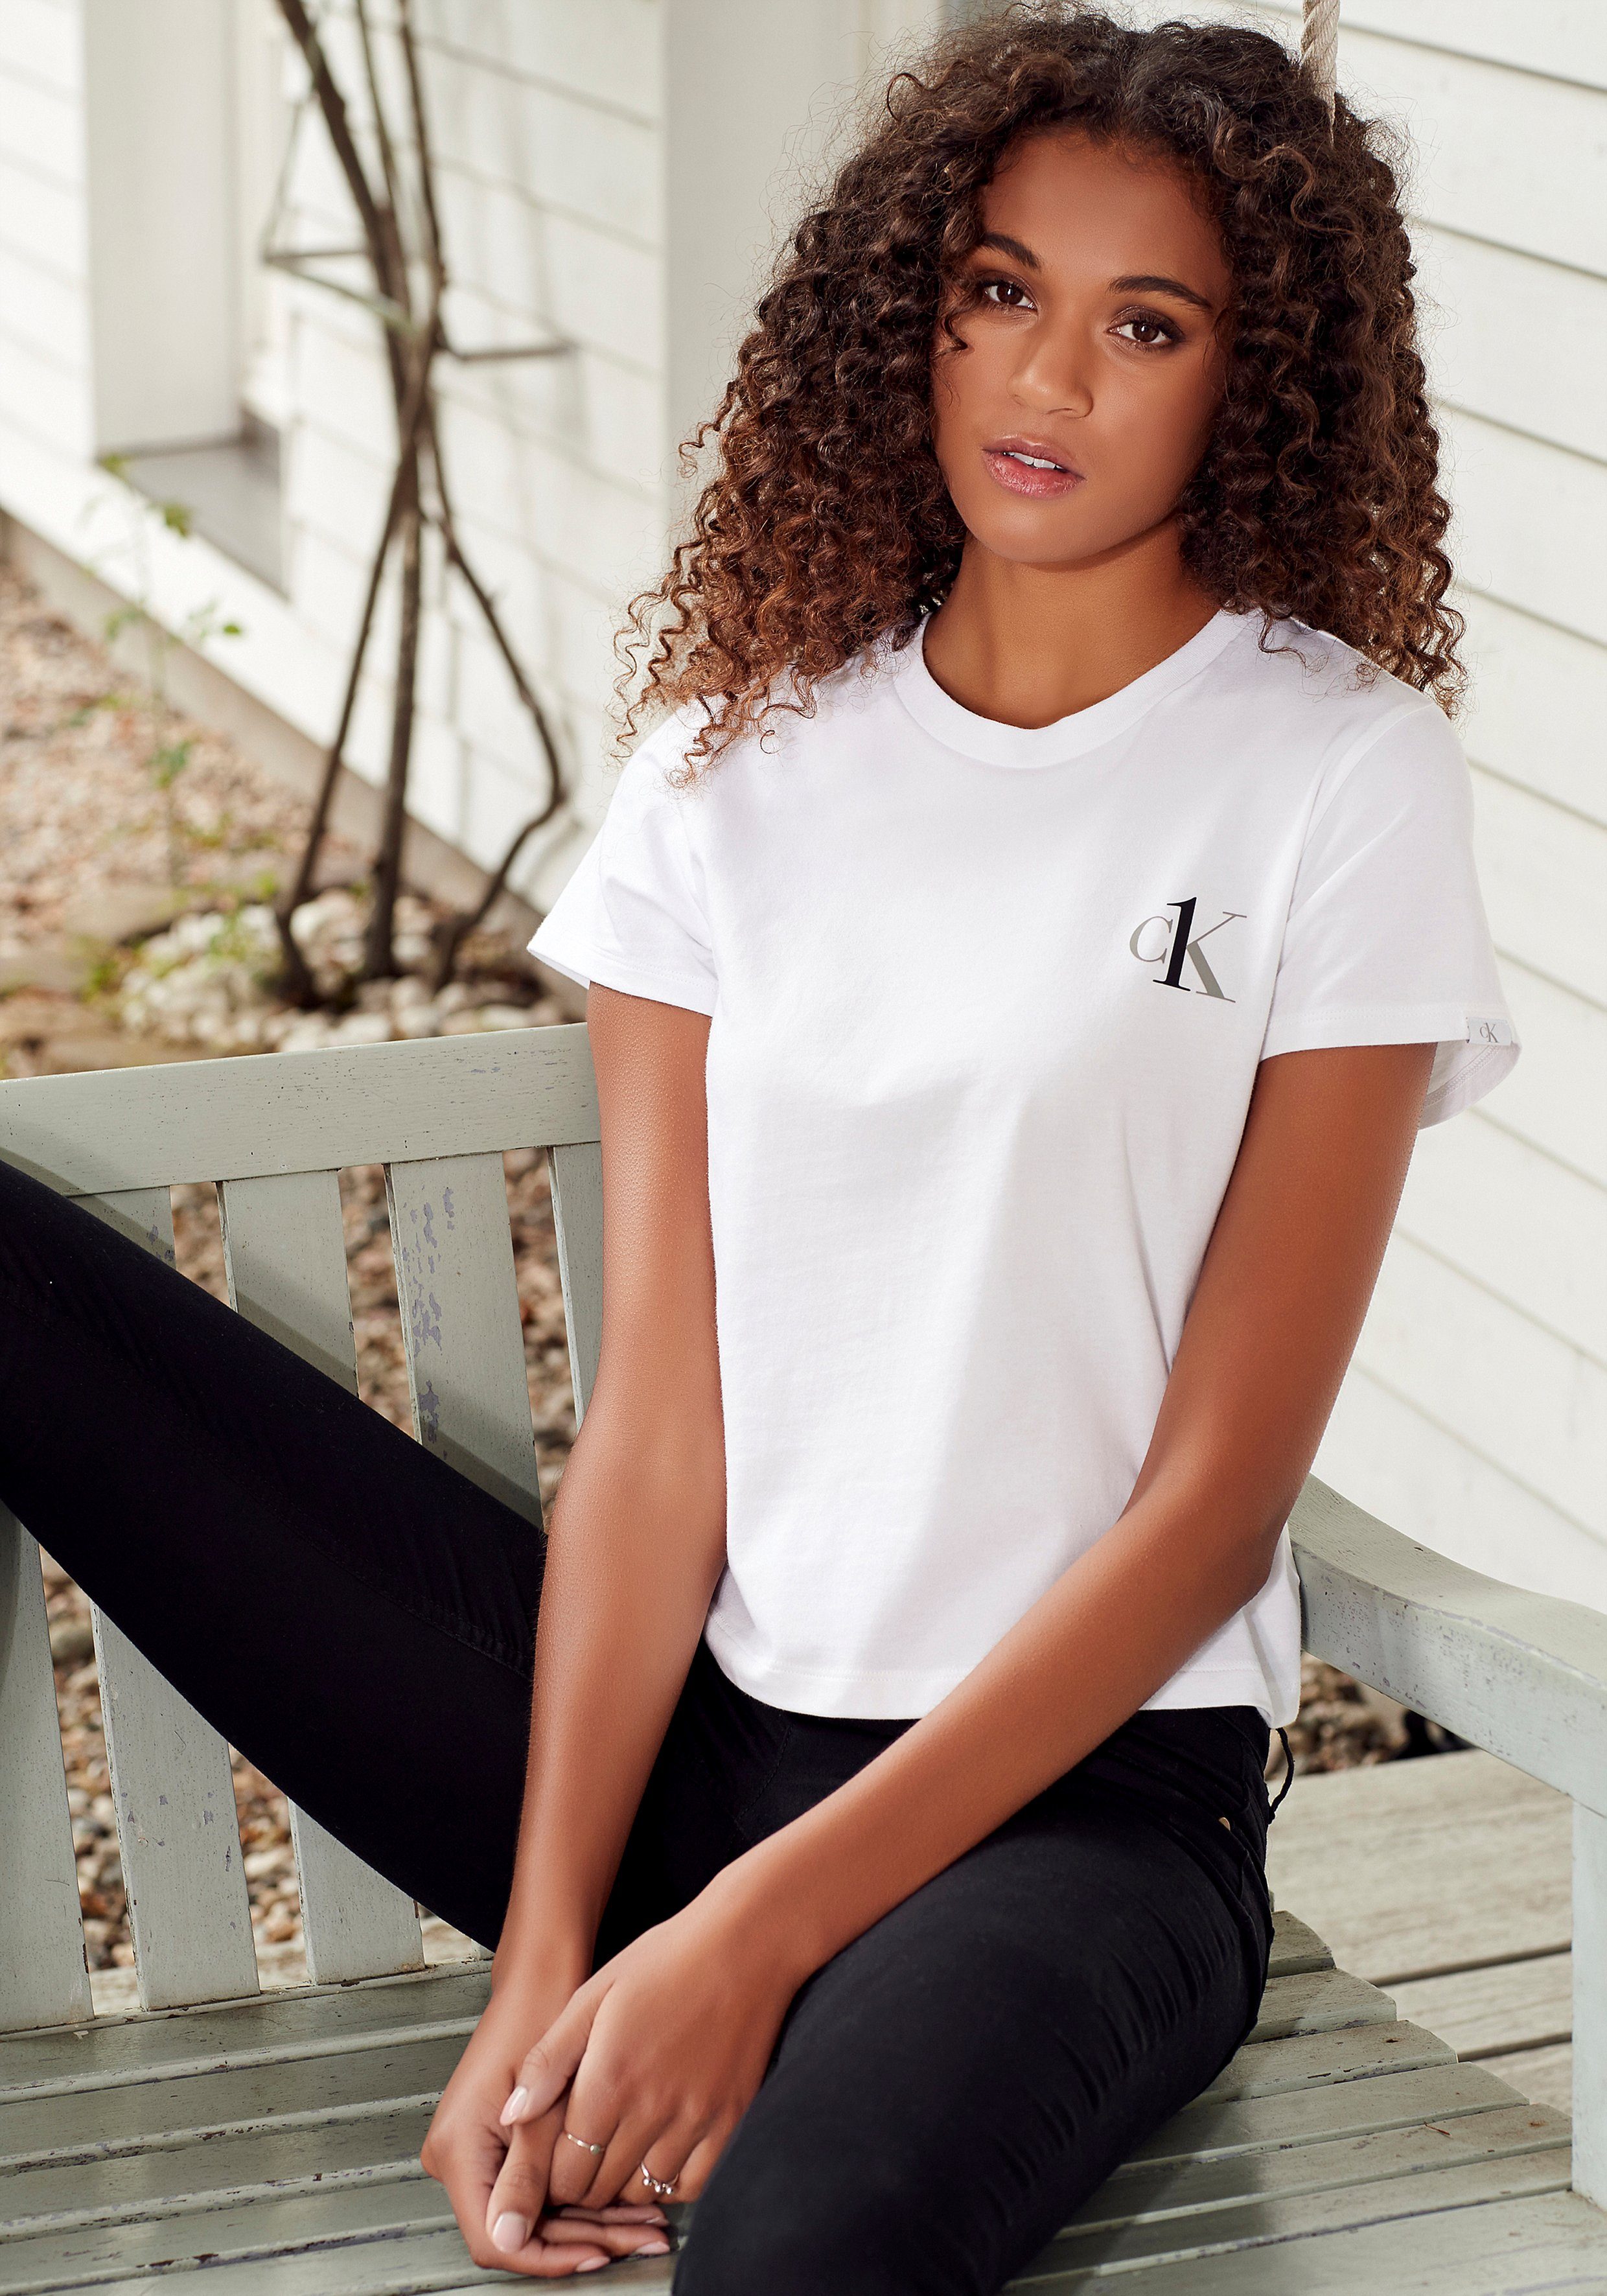 Calvin Klein Damen T-Shirts online kaufen | OTTO